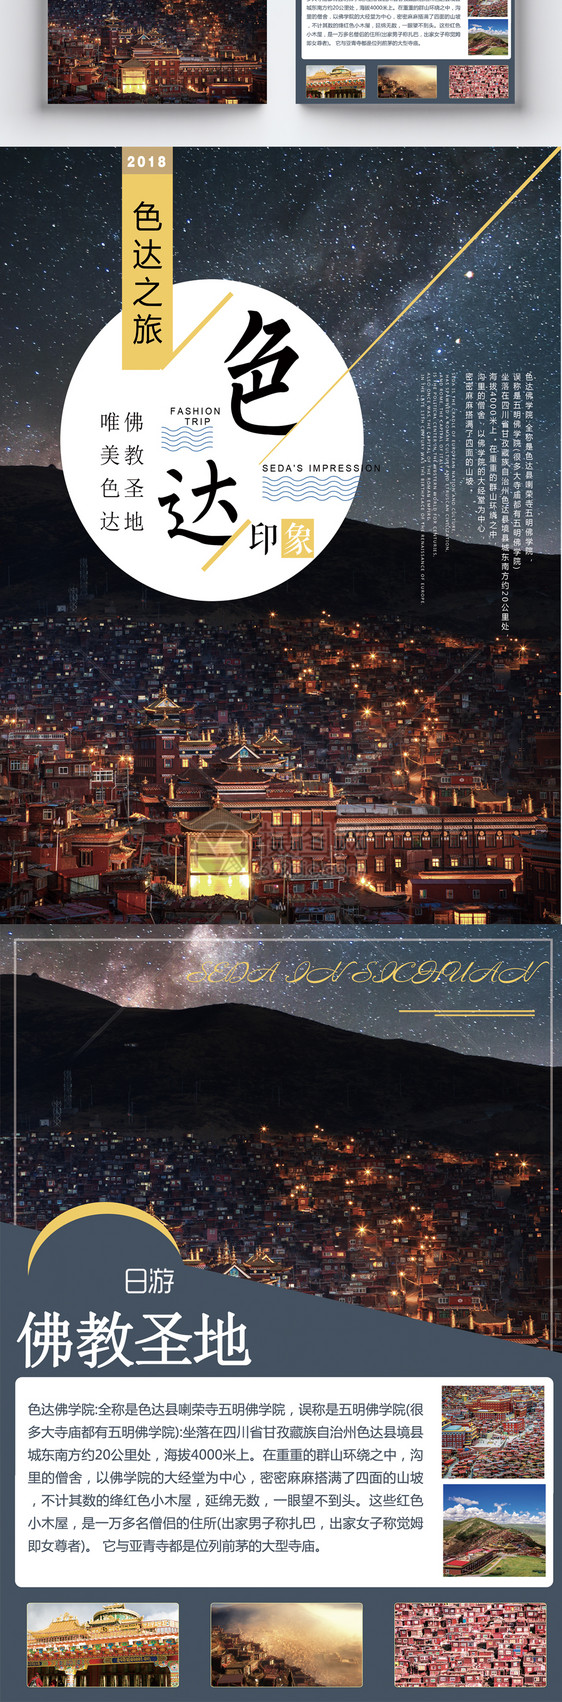 西藏色达旅游宣传单图片